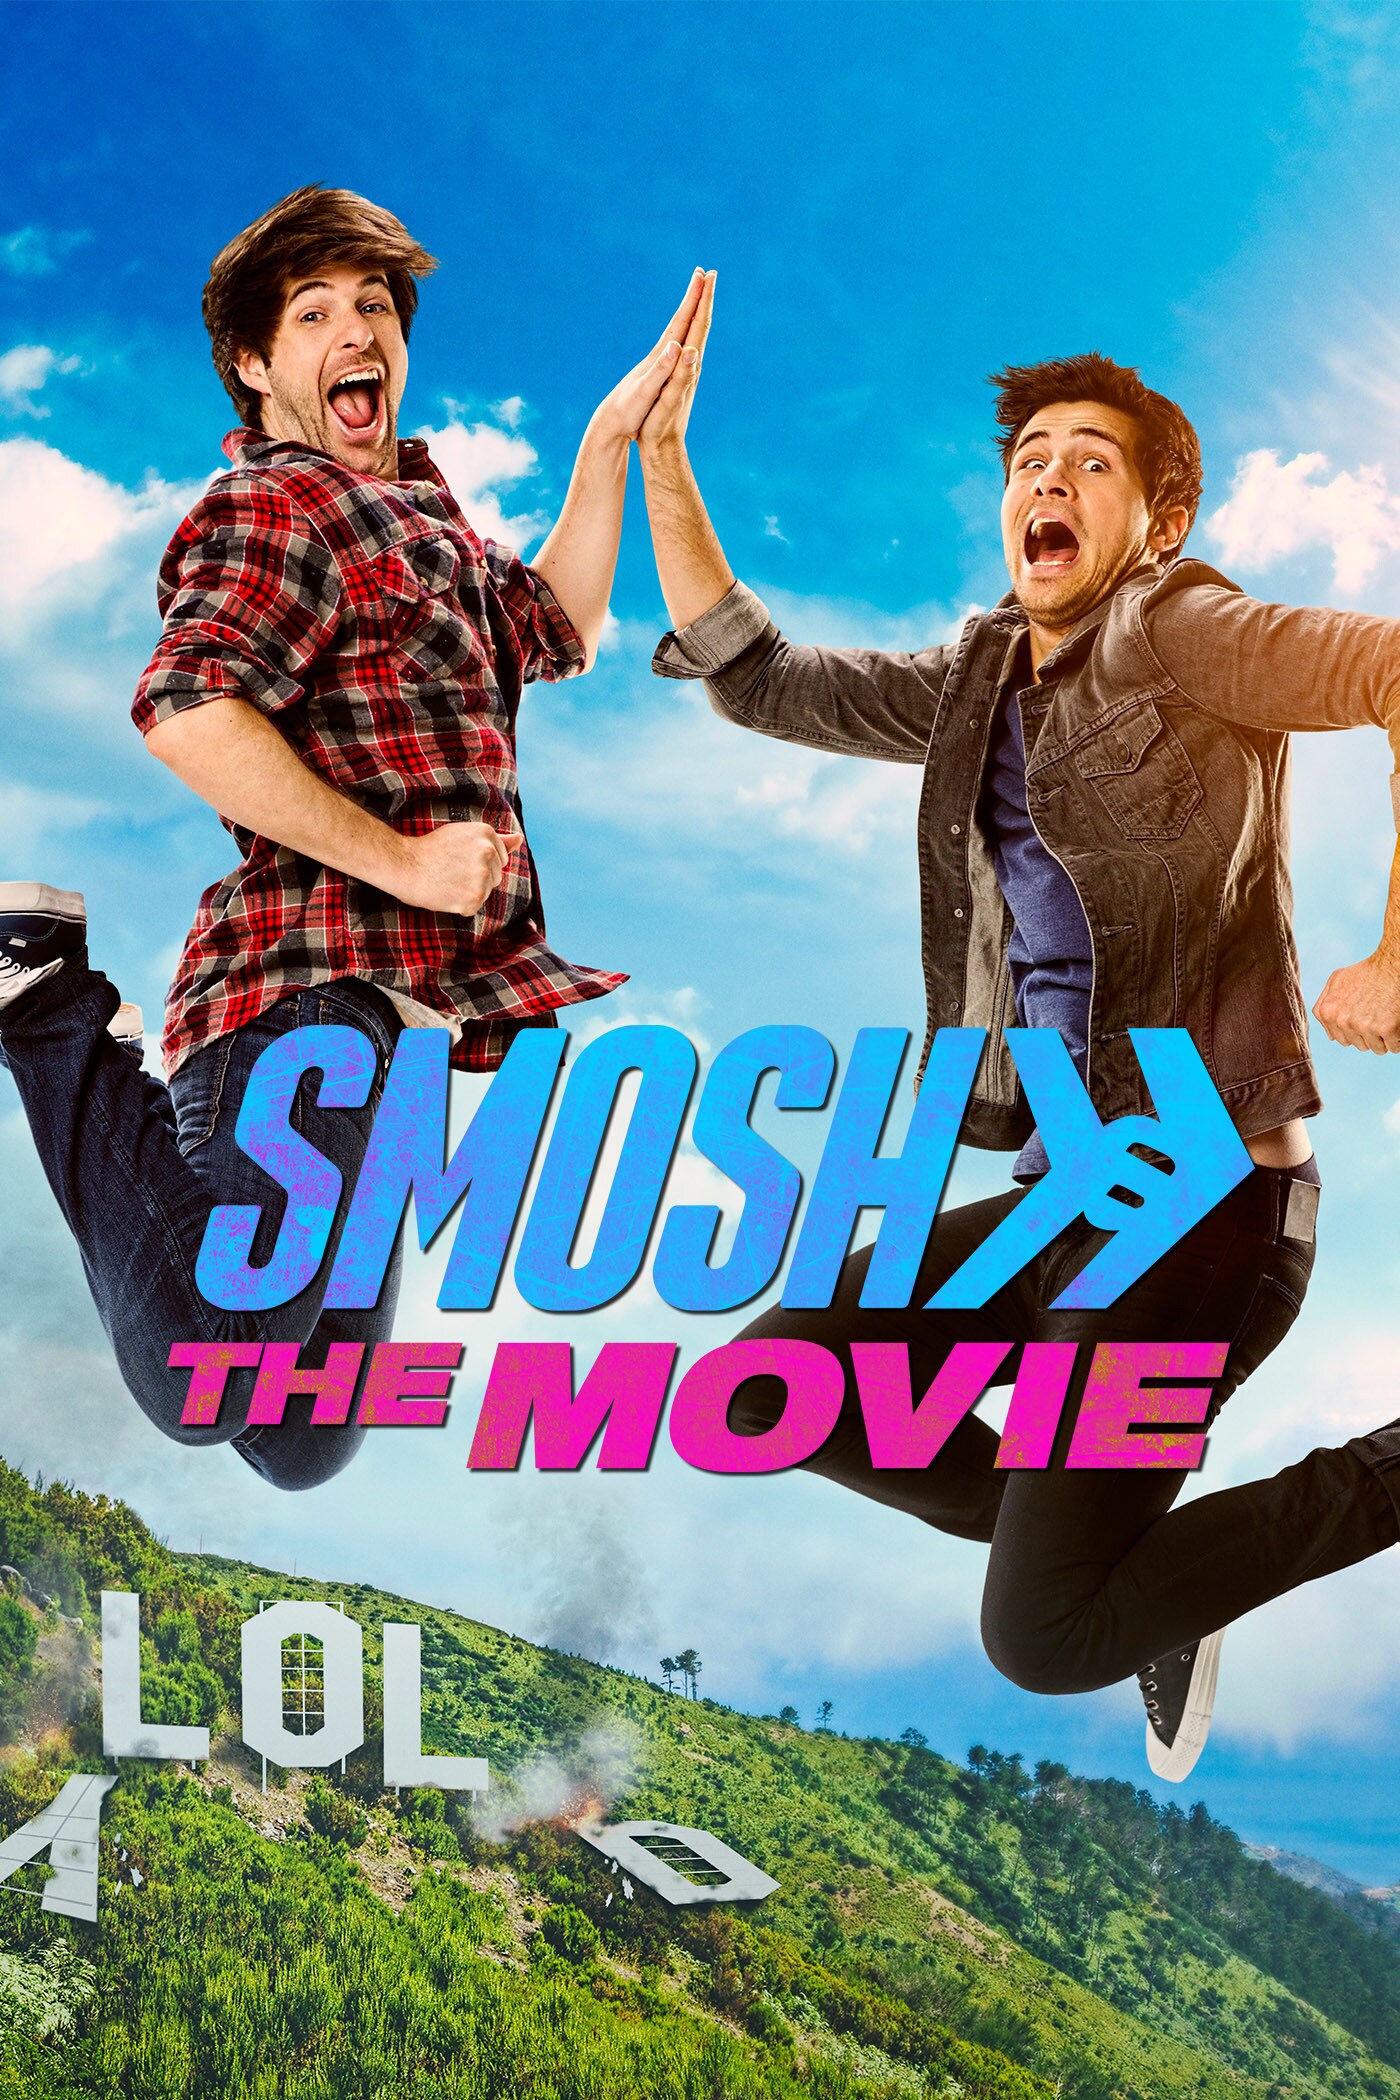 SMOSH: The Movie film poster